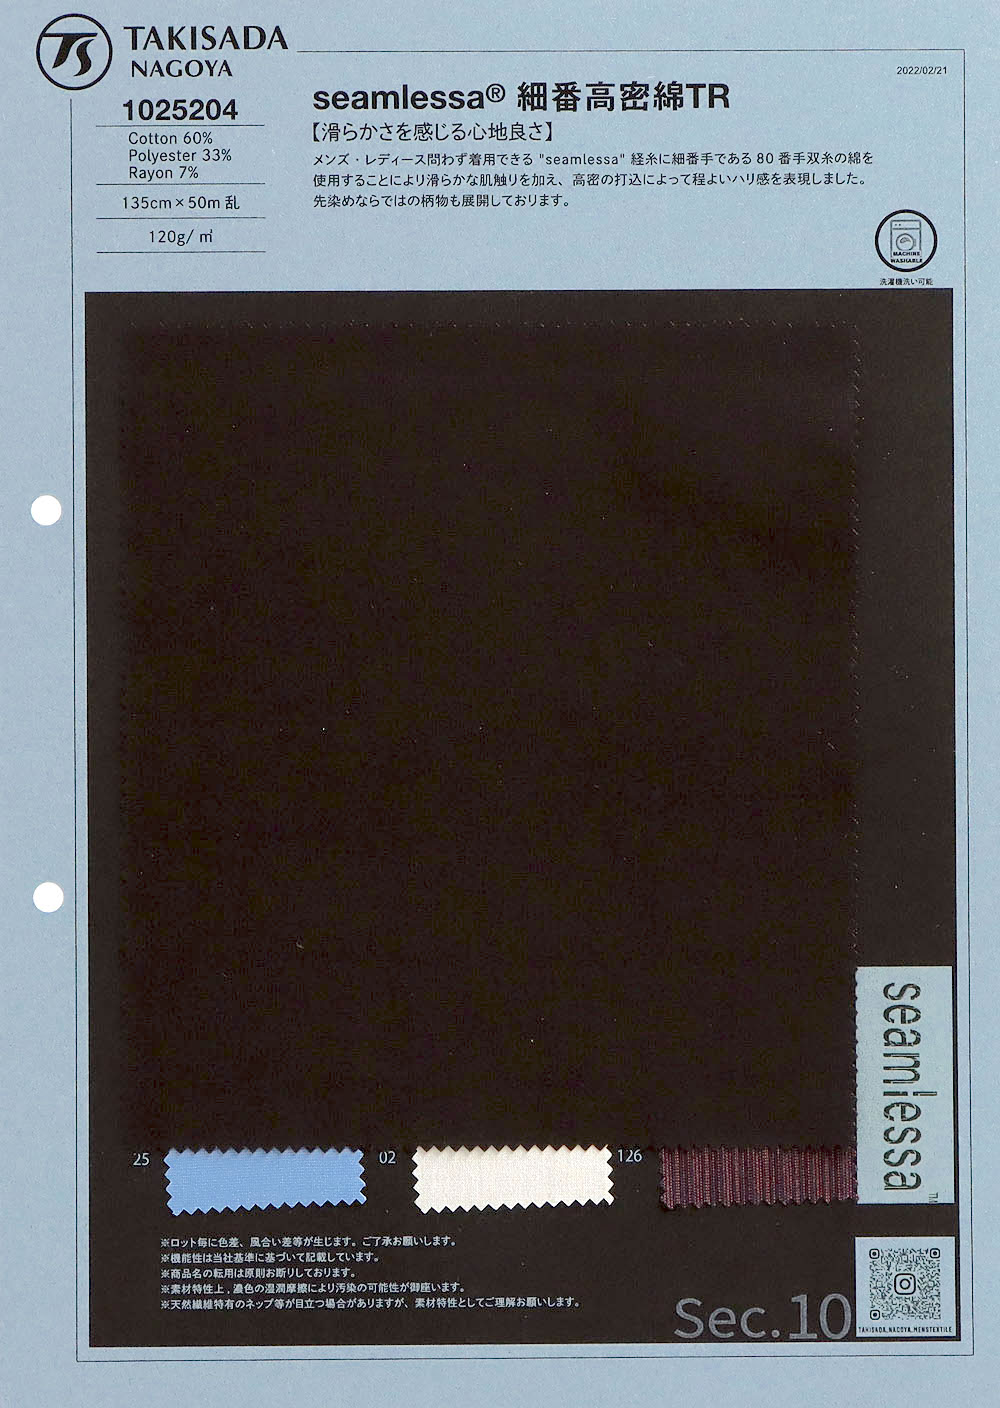 1025204 Seamlessa (R) Algodão De Alta Densidade Número Fino TR[Têxtil / Tecido] Takisada Nagoya